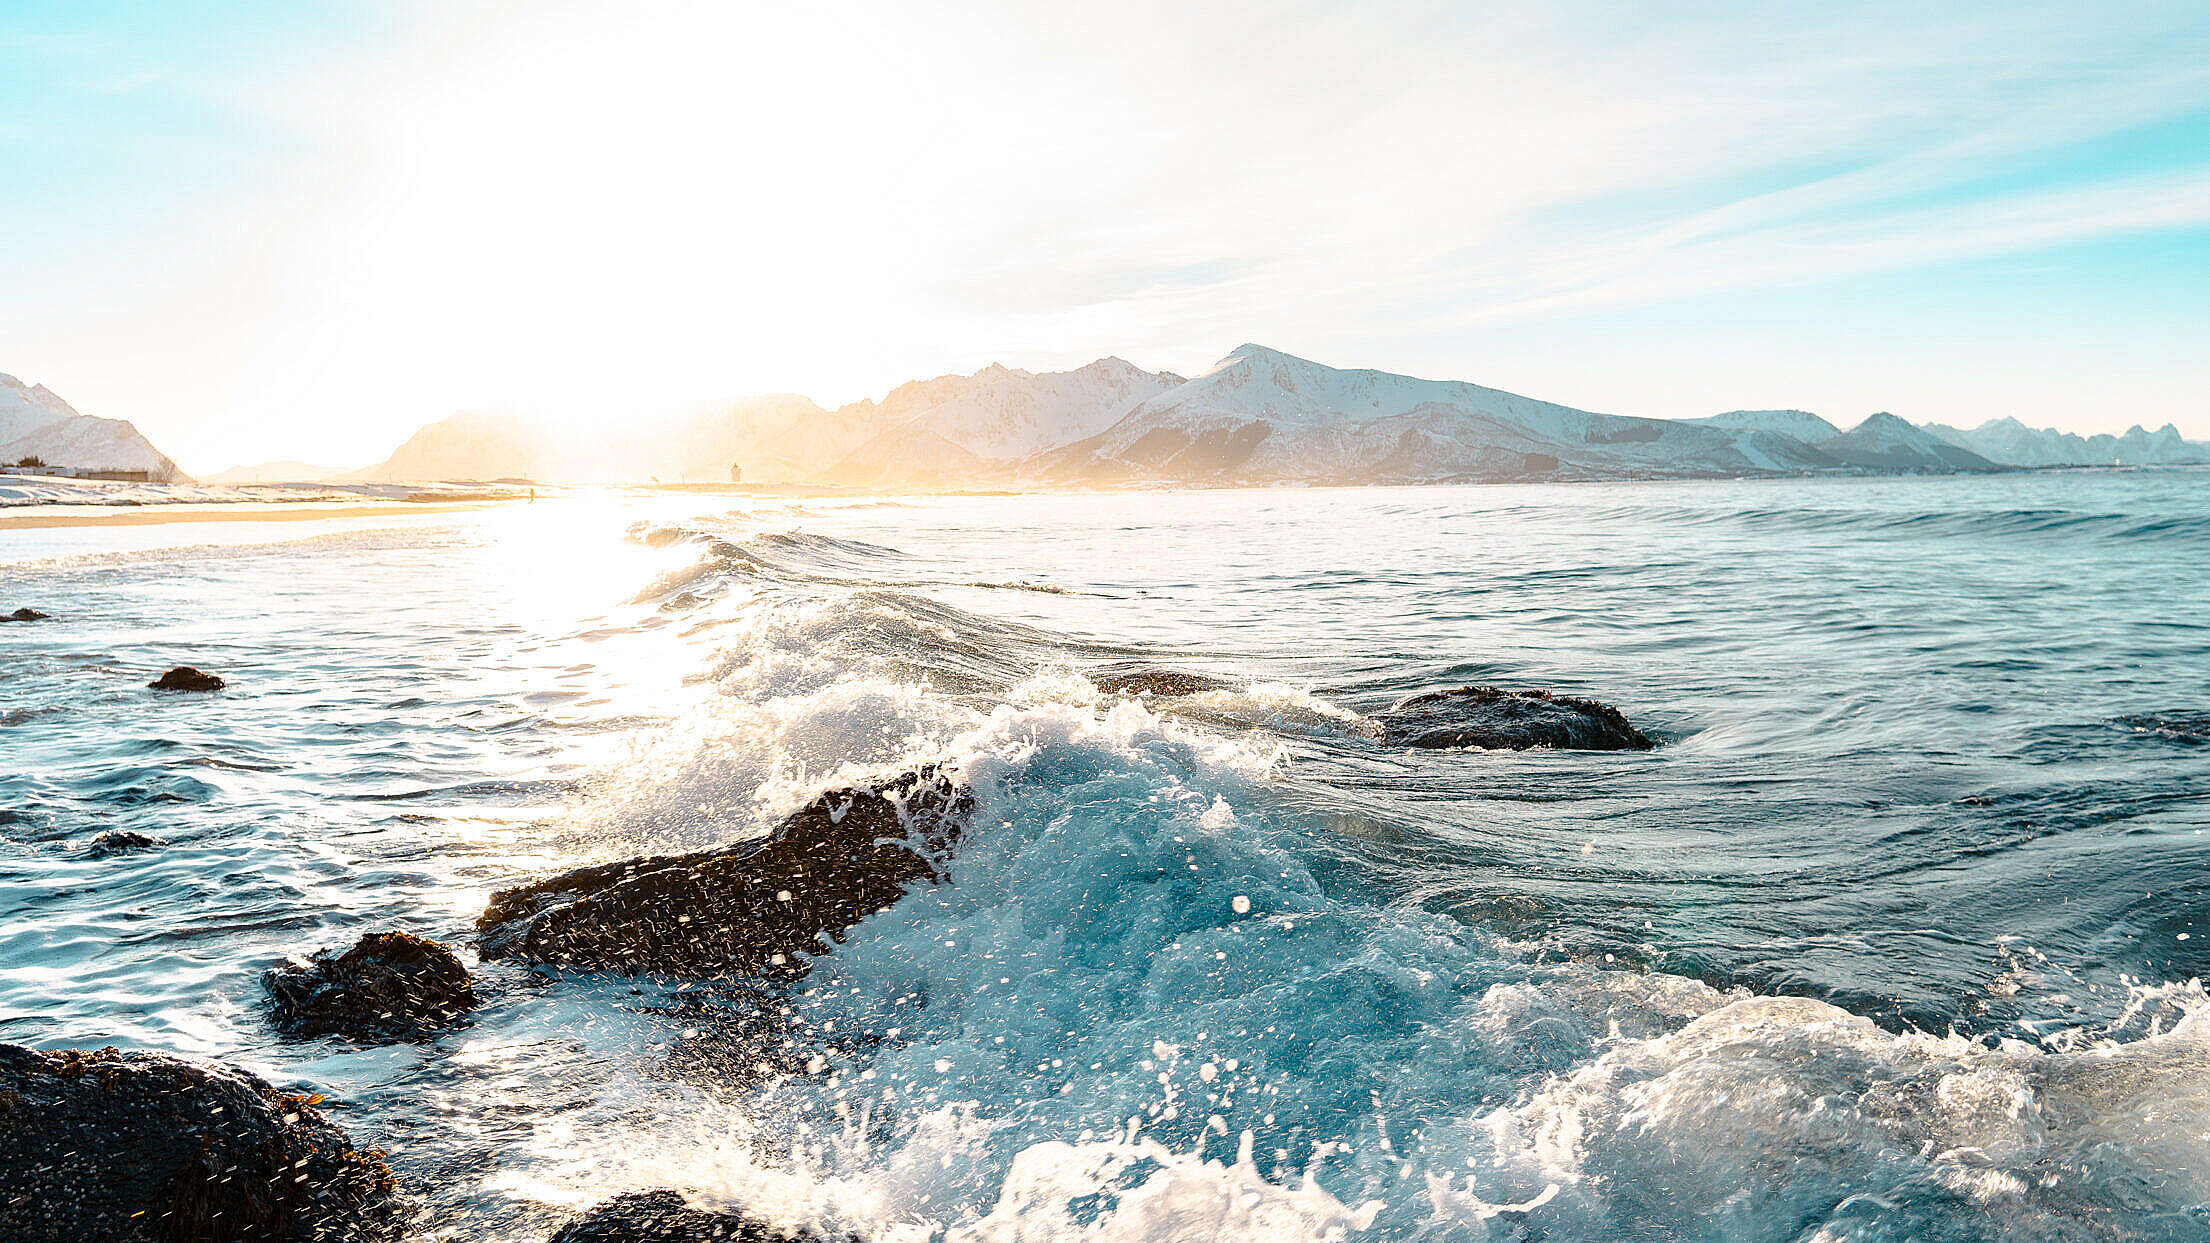 Crushing Wave near Norwegian Shore Free Stock Photo